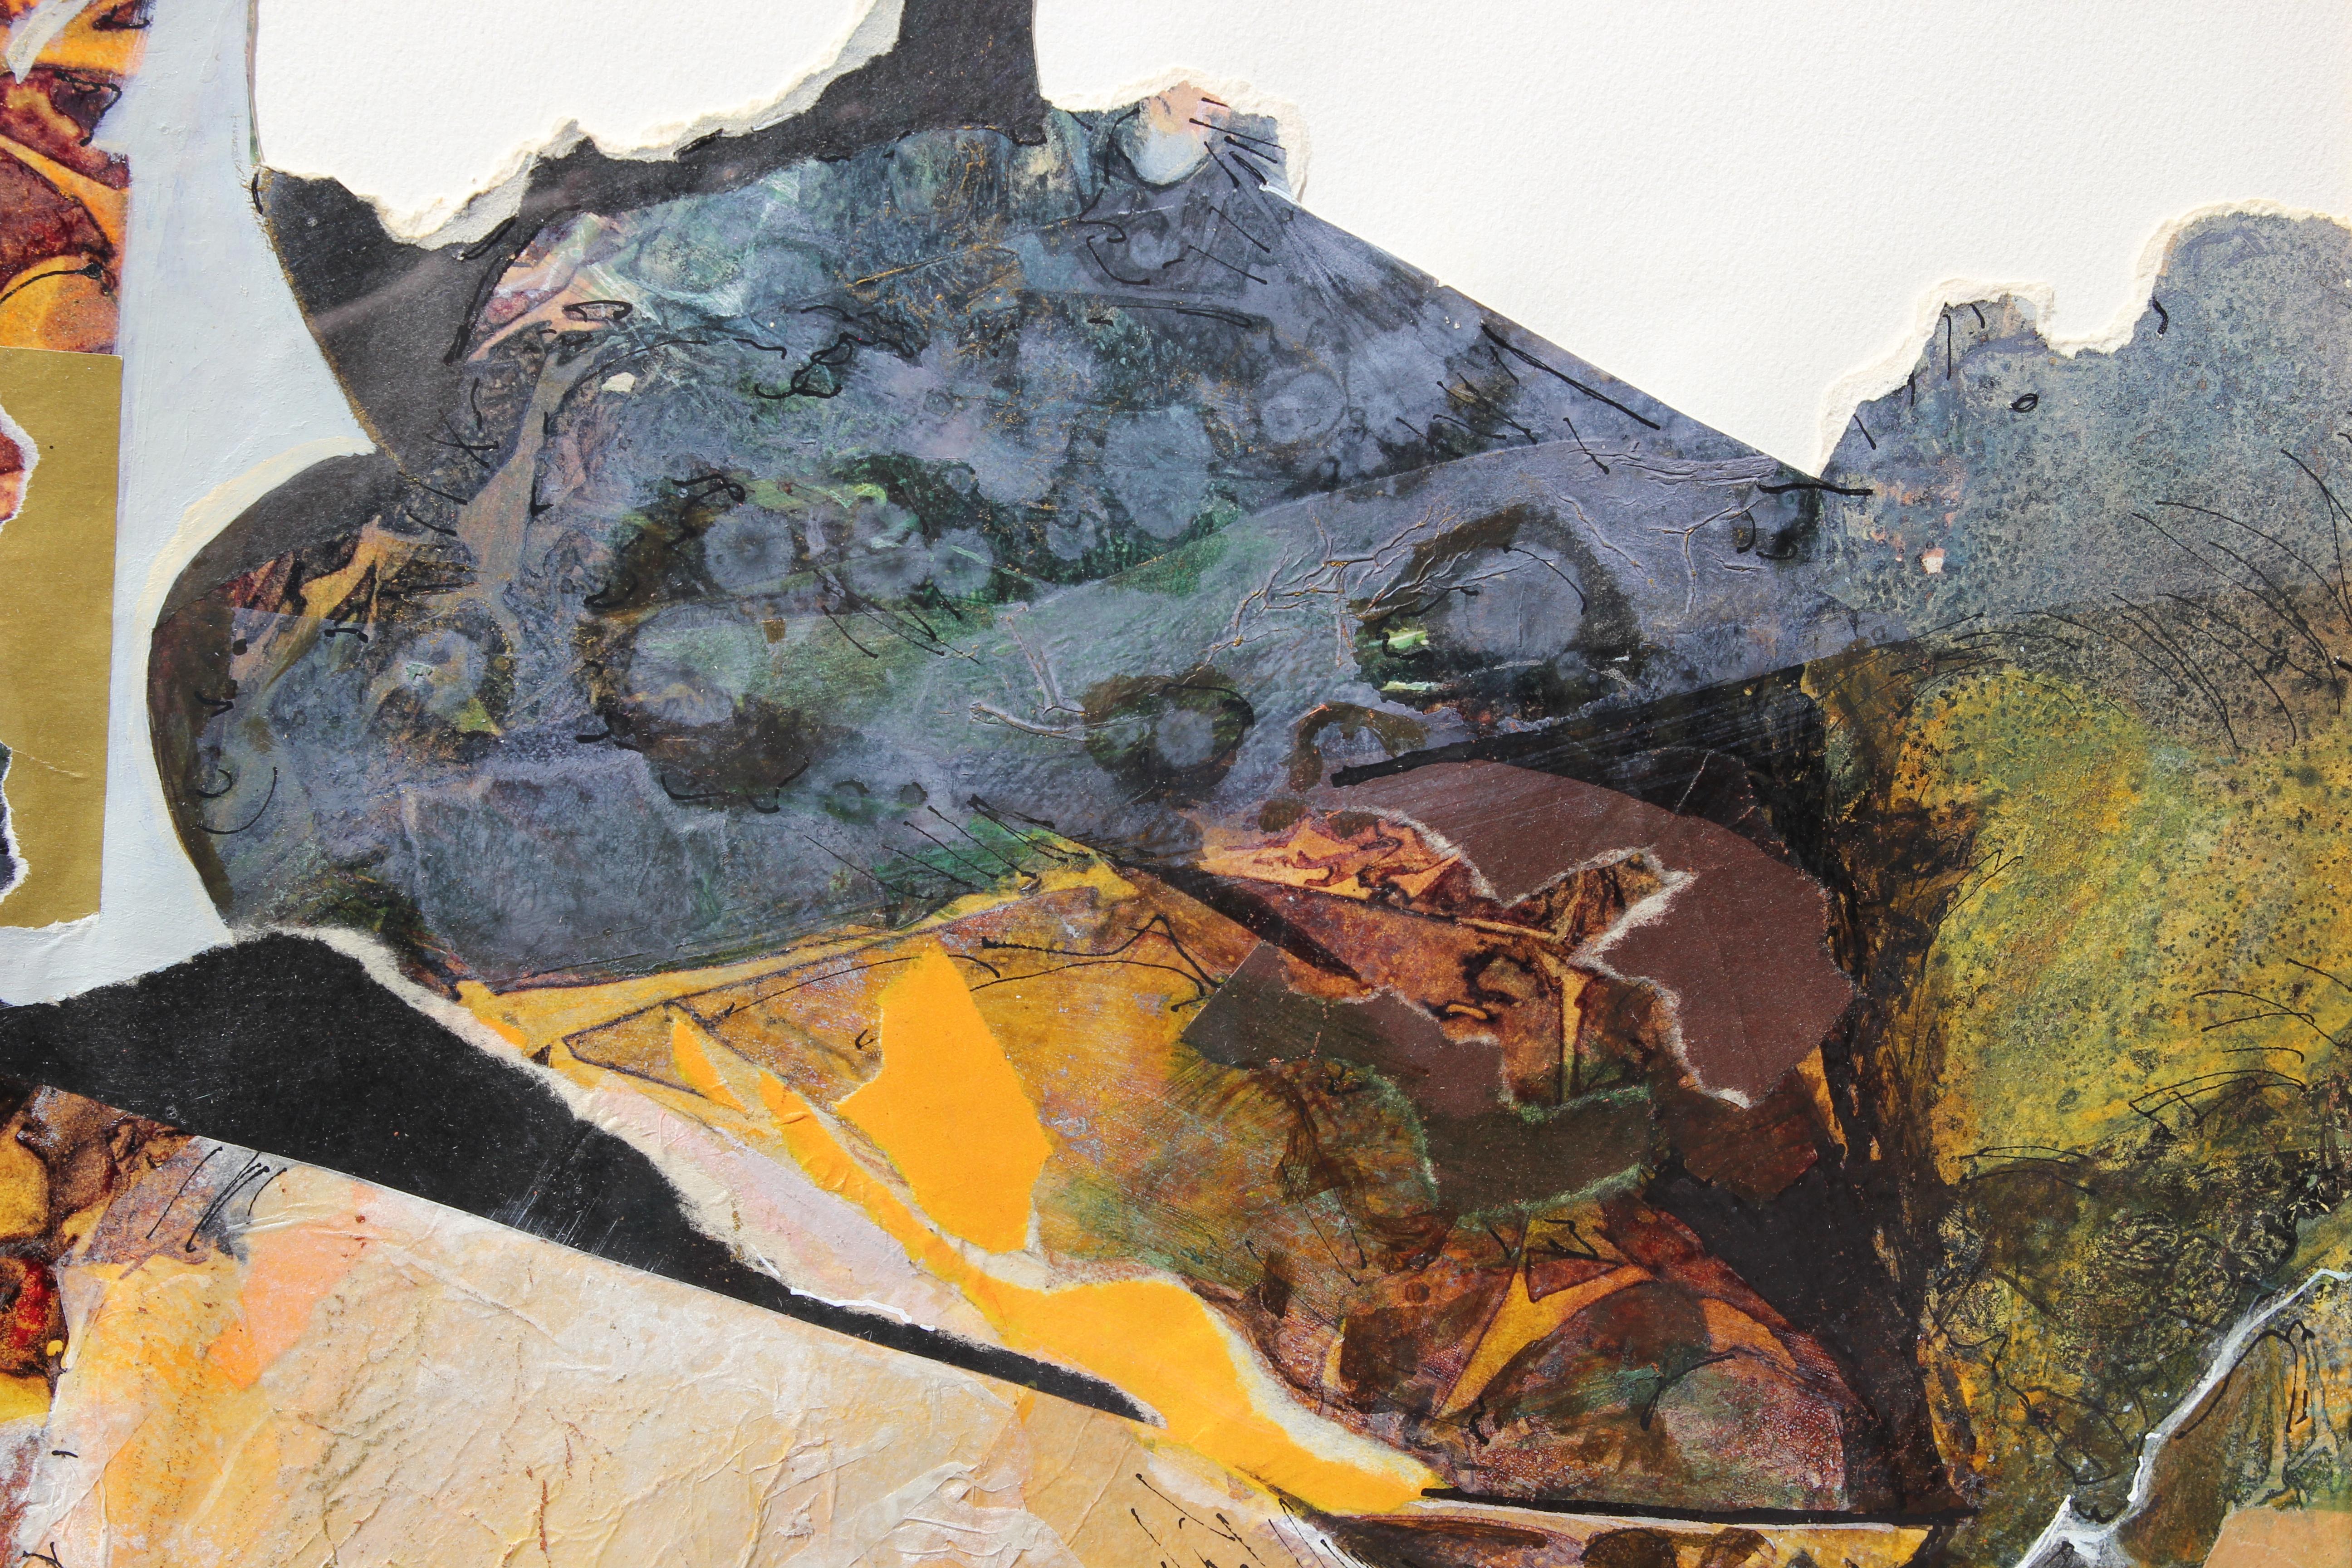 Modernes abstraktes Mixed-Media-Gemälde in neutralen Farbtönen der texanischen Künstlerin Carole Myers. Das Werk besteht aus einer Collage aus verschiedenen strukturierten Papieren, die mit Farben kombiniert wurden, um ein Gefühl von Tiefe zu